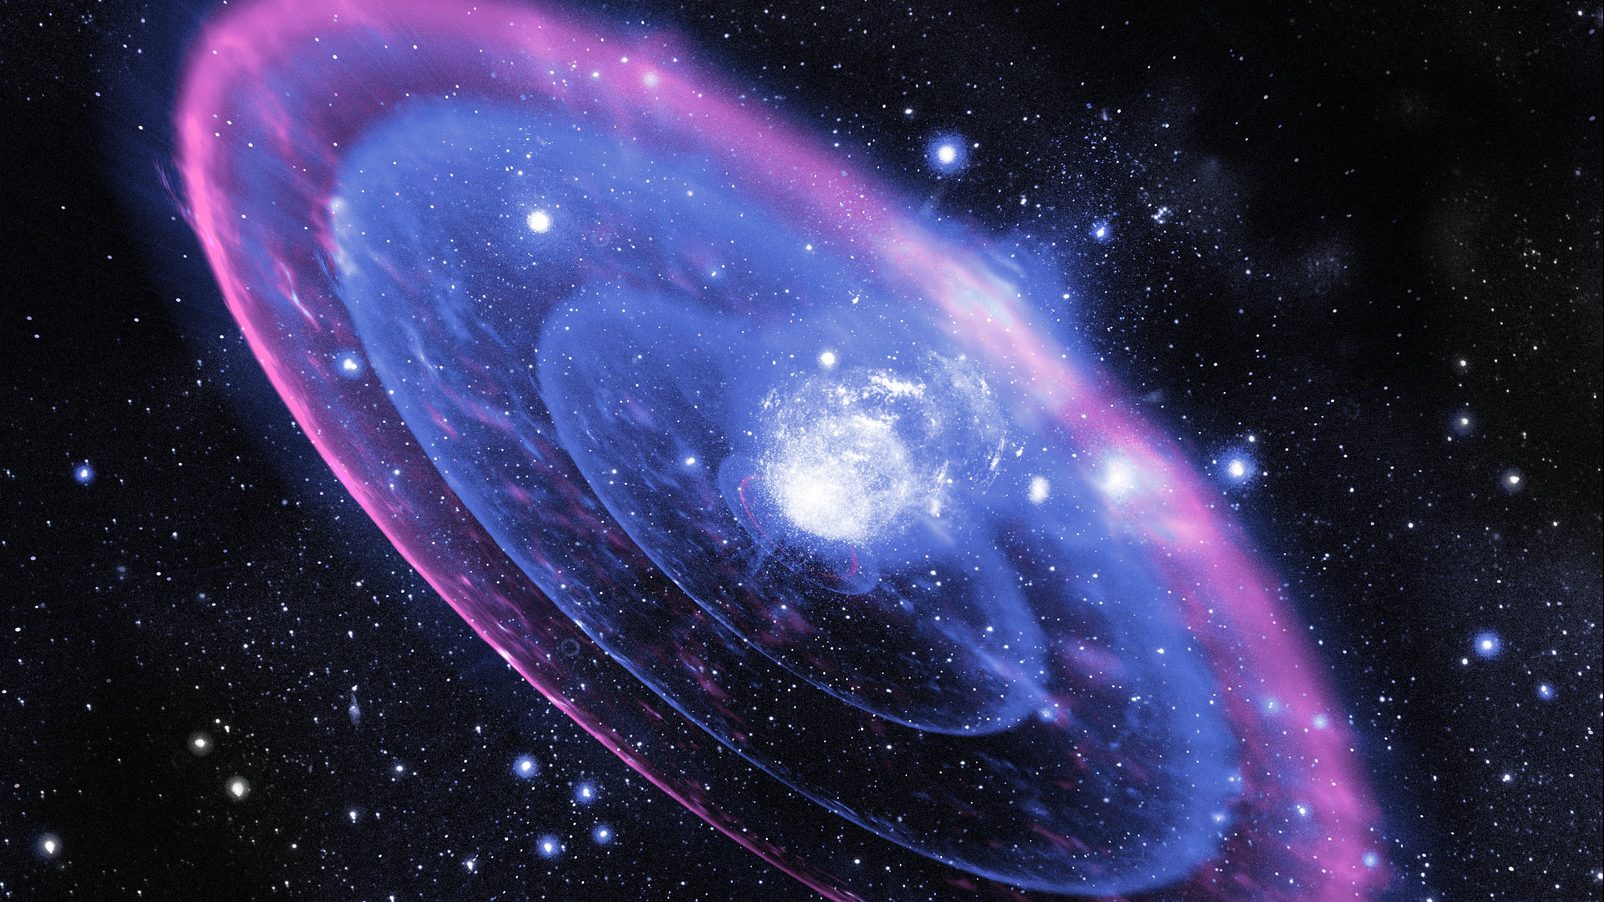 Óriási robbanást észleltek egy távoli galaxisban